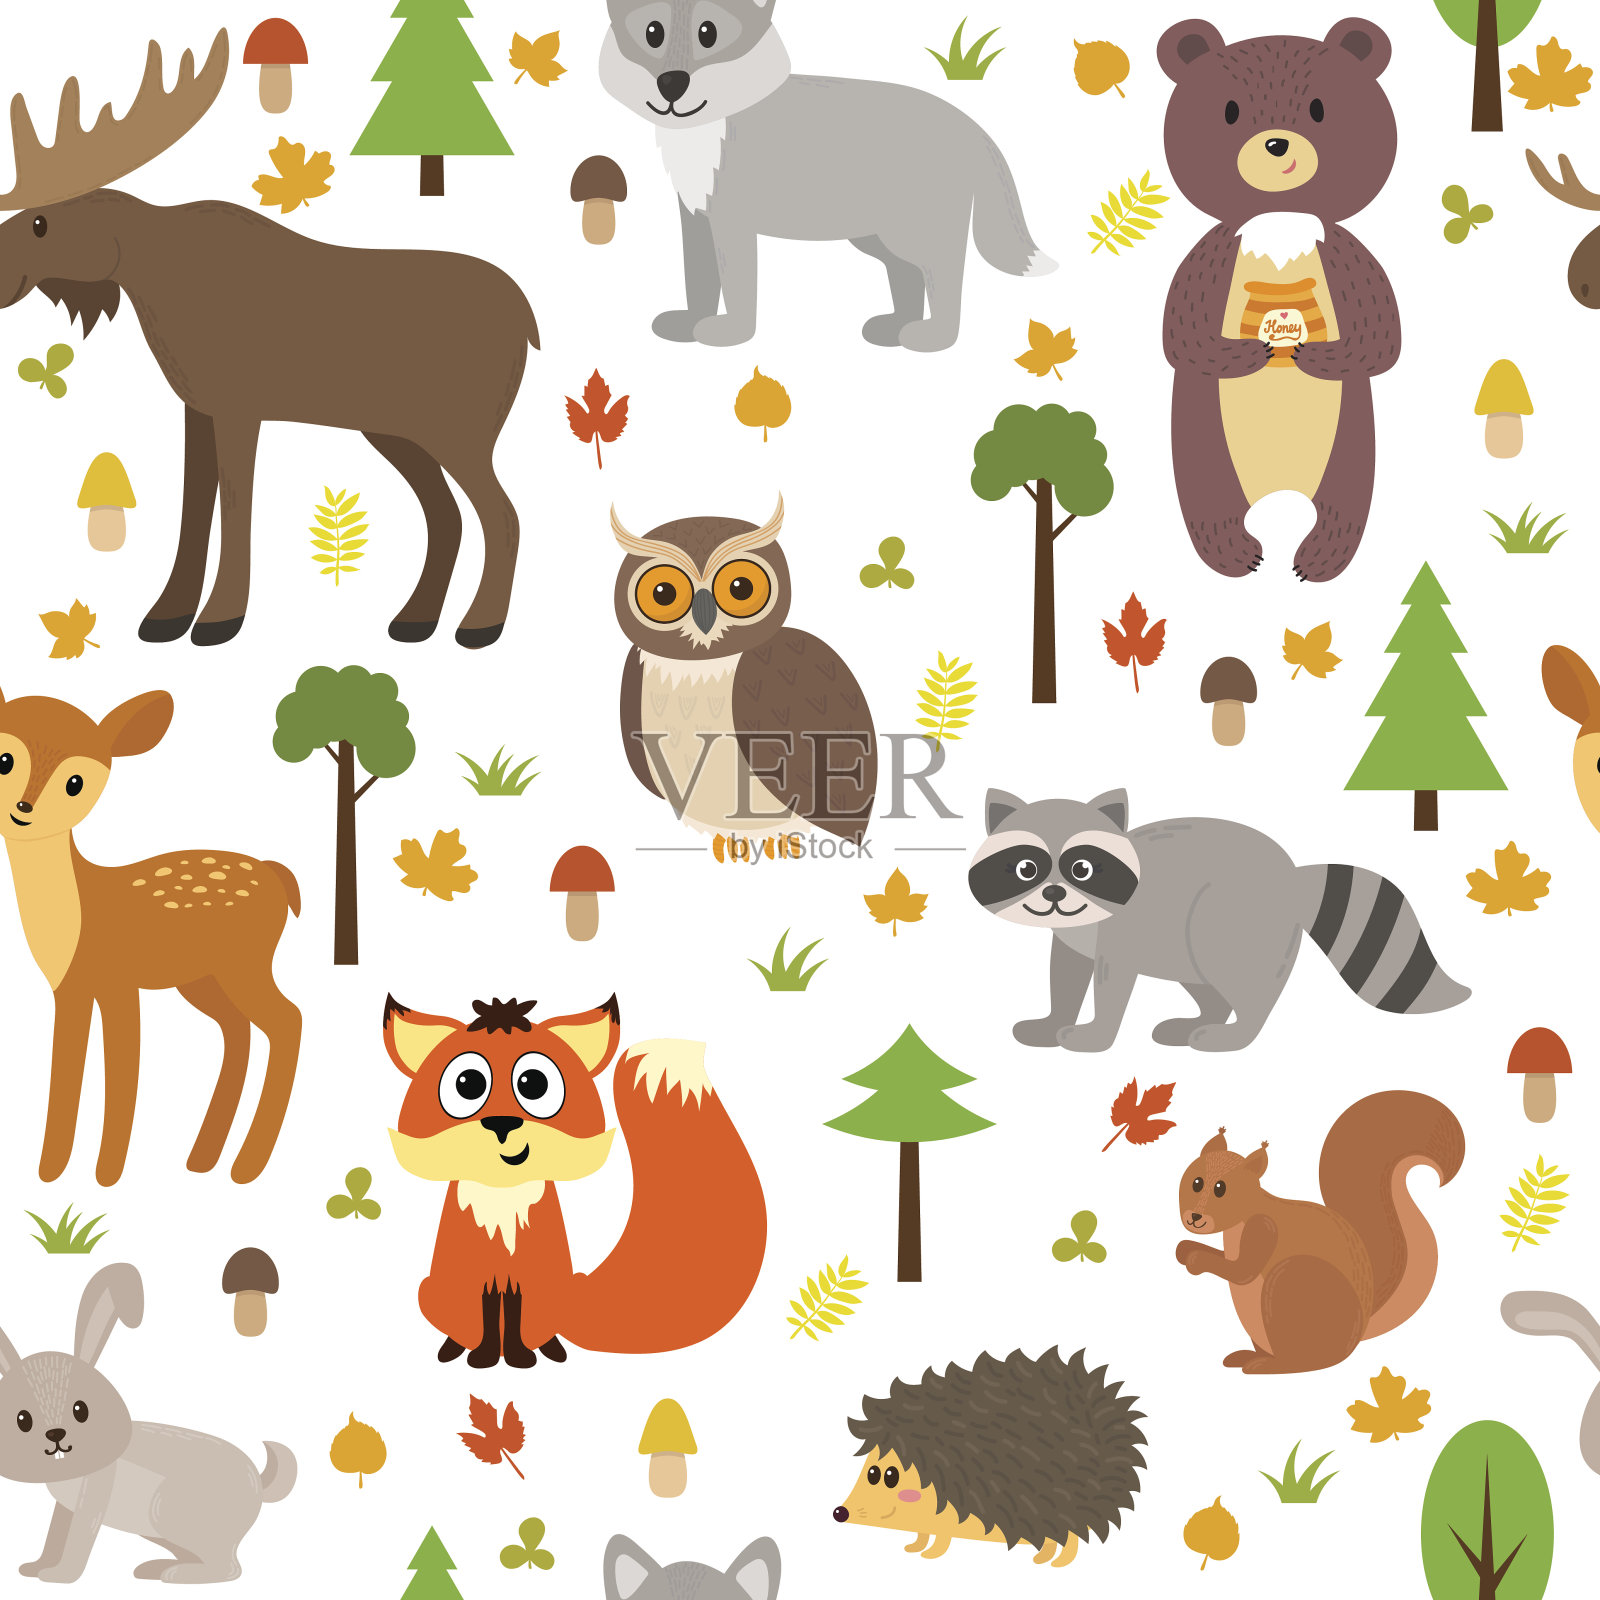 图案无缝搭配可爱的森林动物、蘑菇、树叶插画图片素材